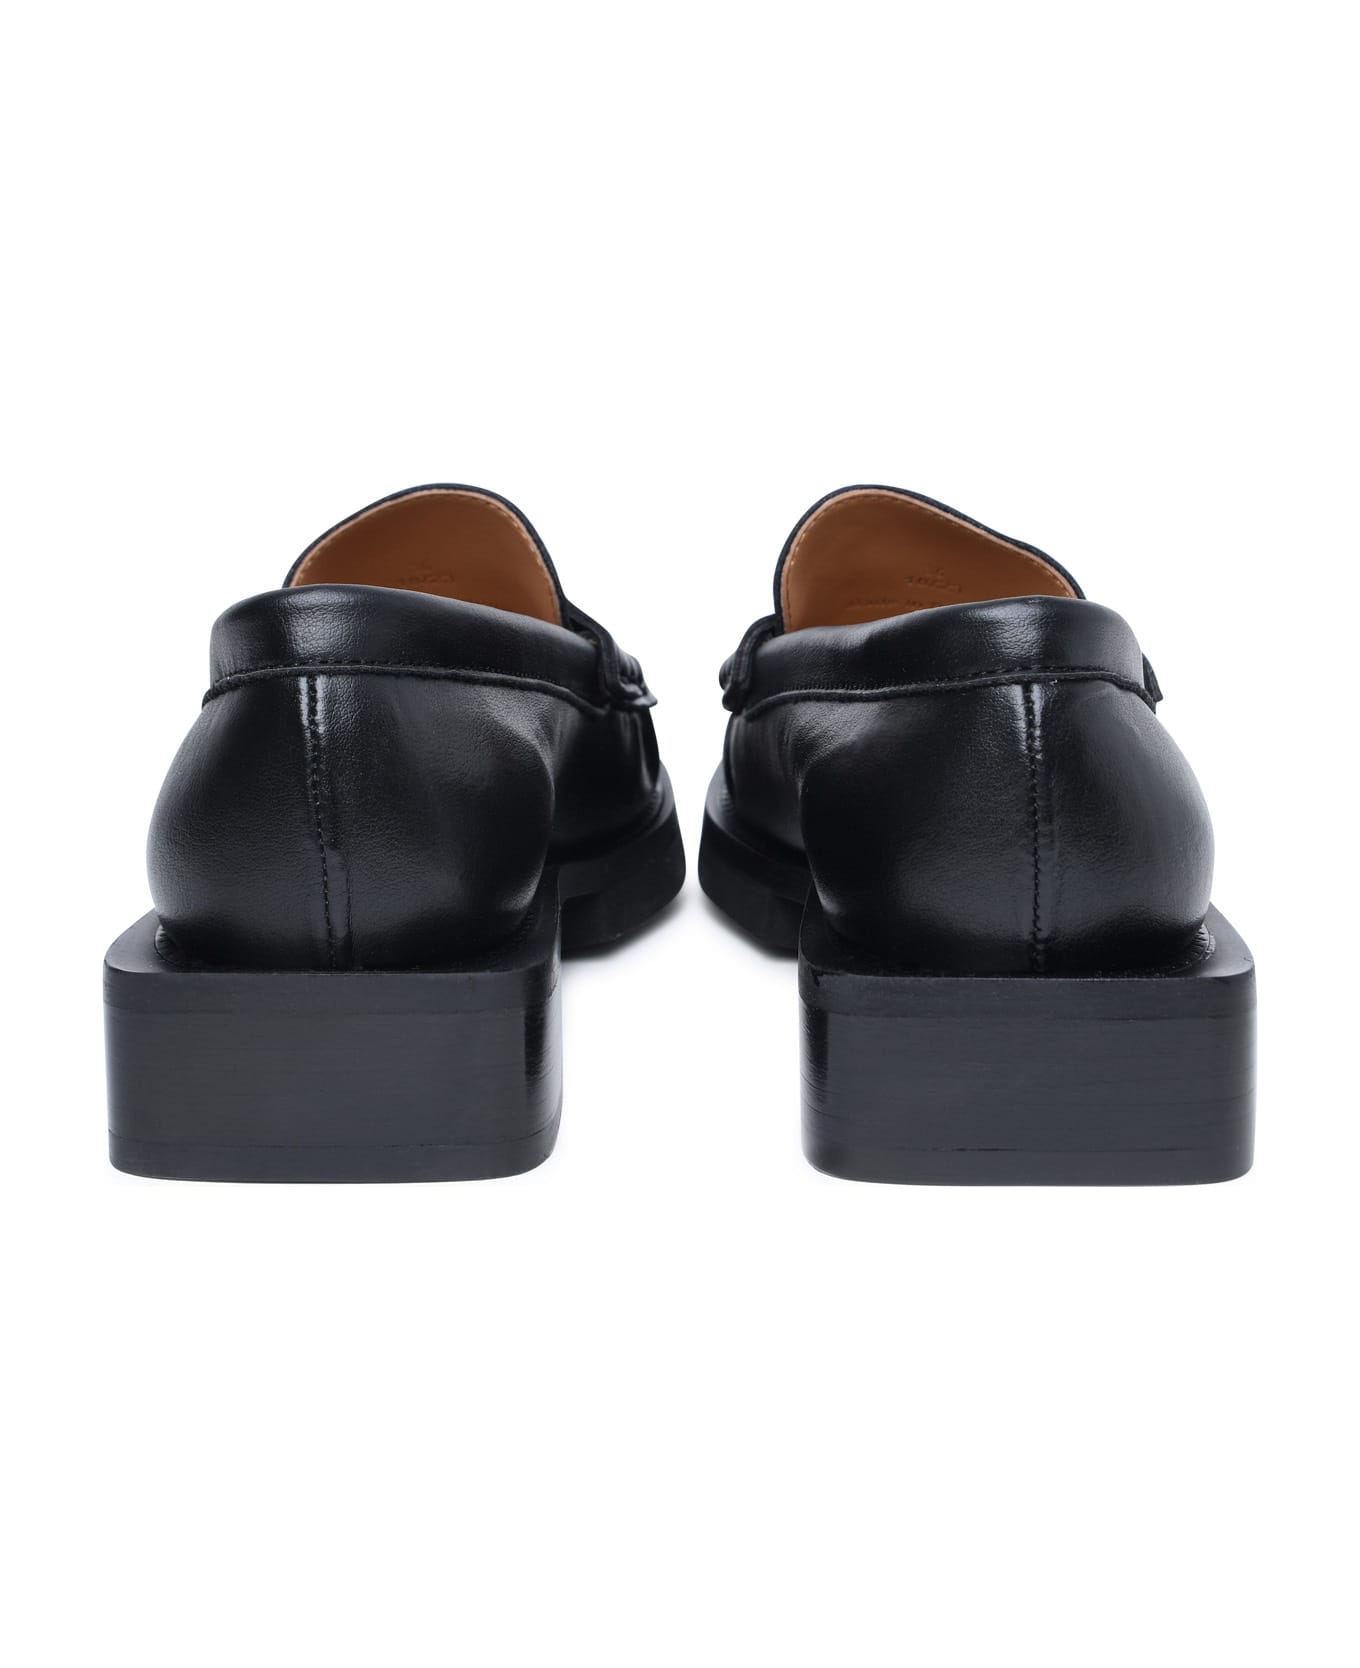 Ganni Black Leather Loafers - Black